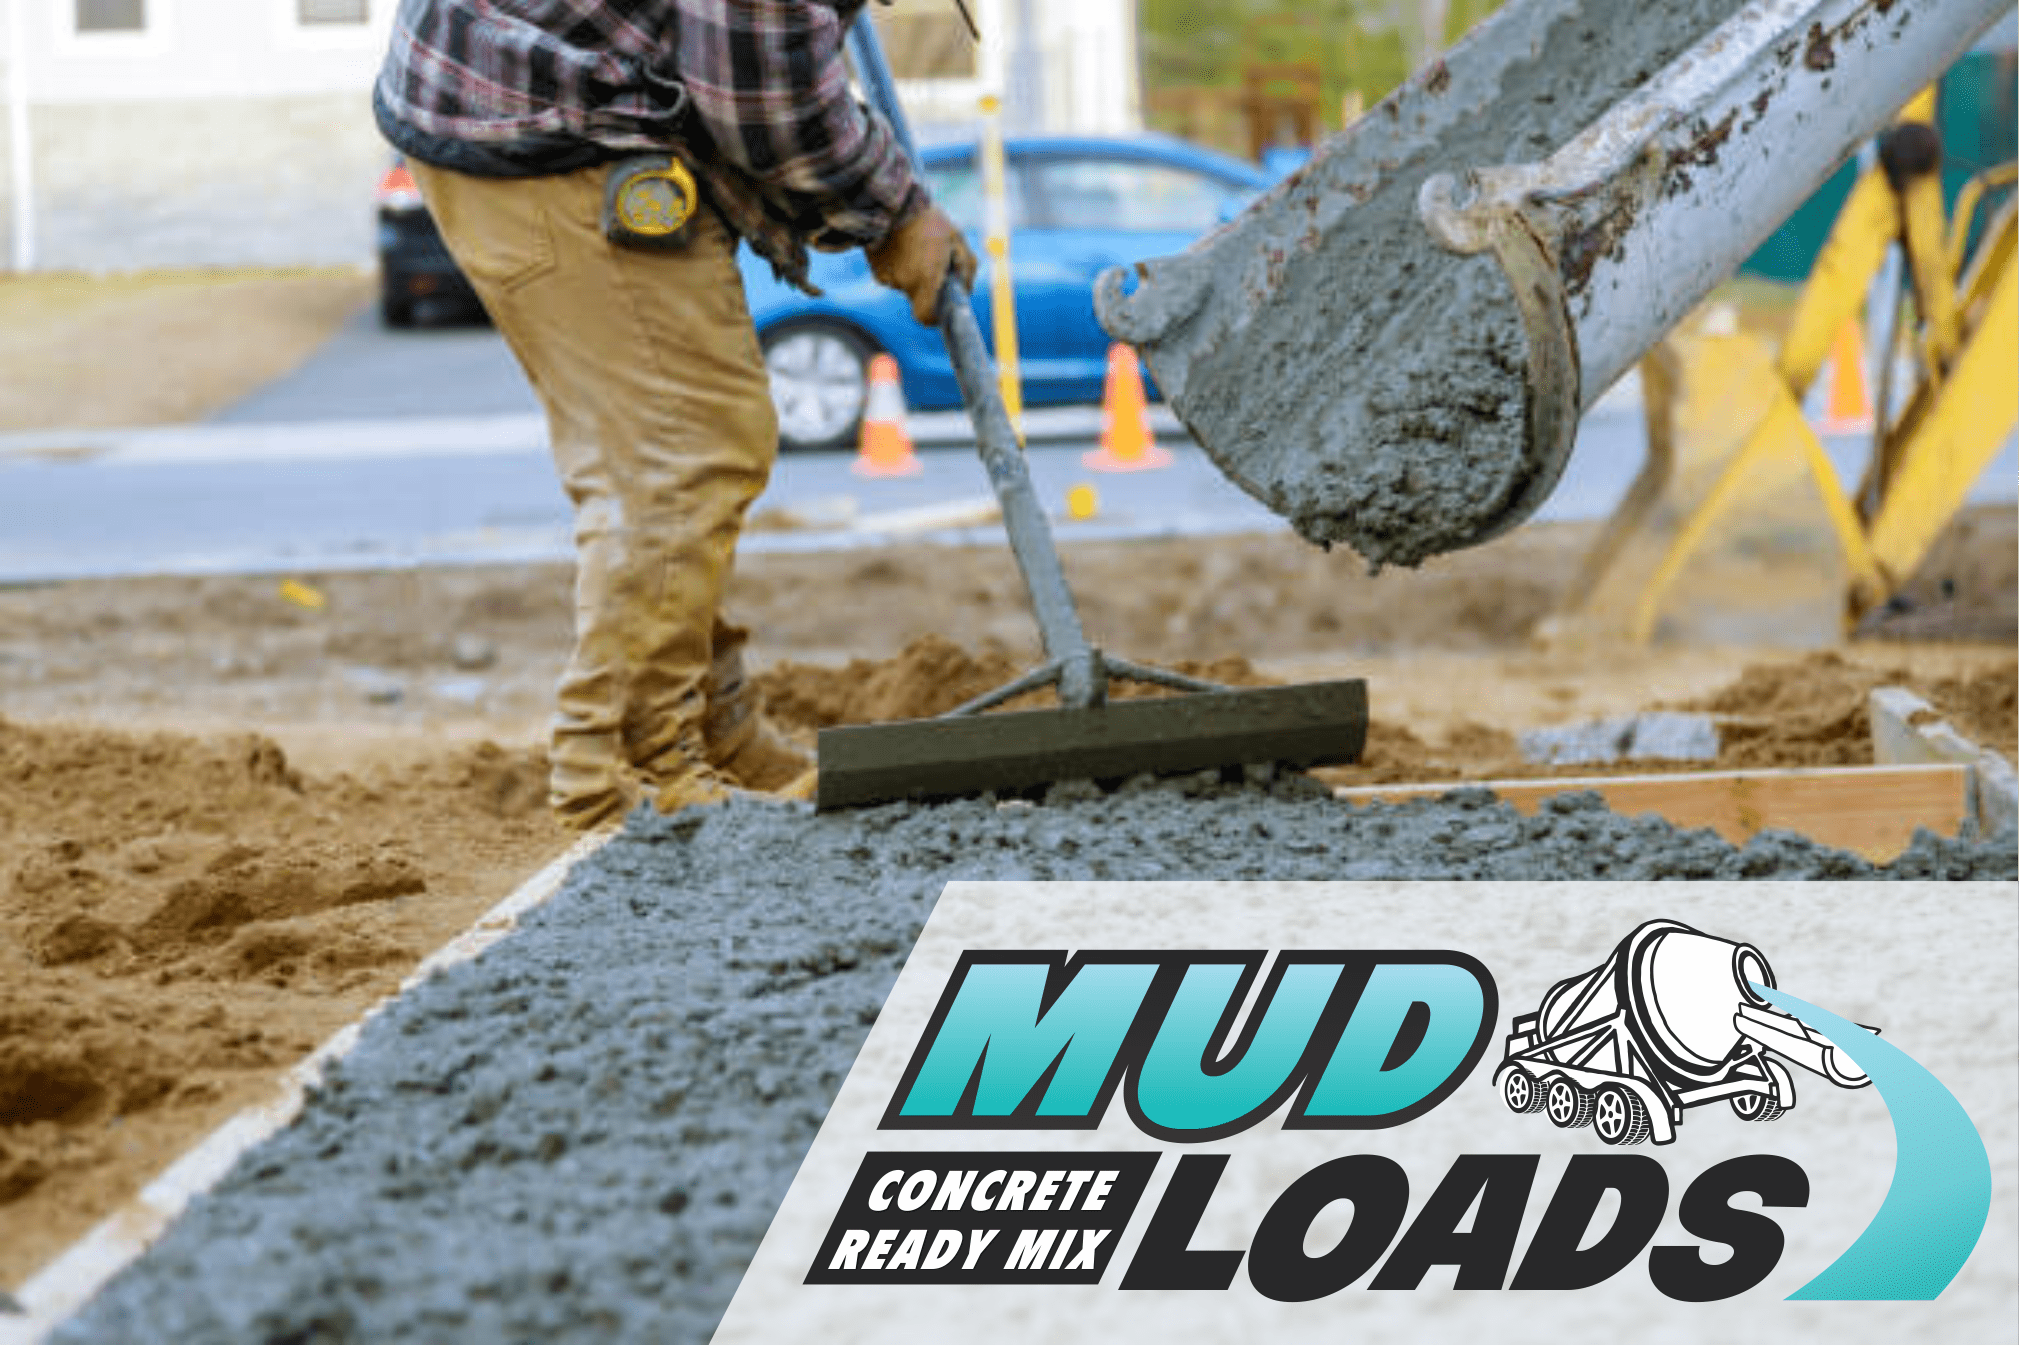 About Mud Loads Mud Loads Concrete Ready Mix